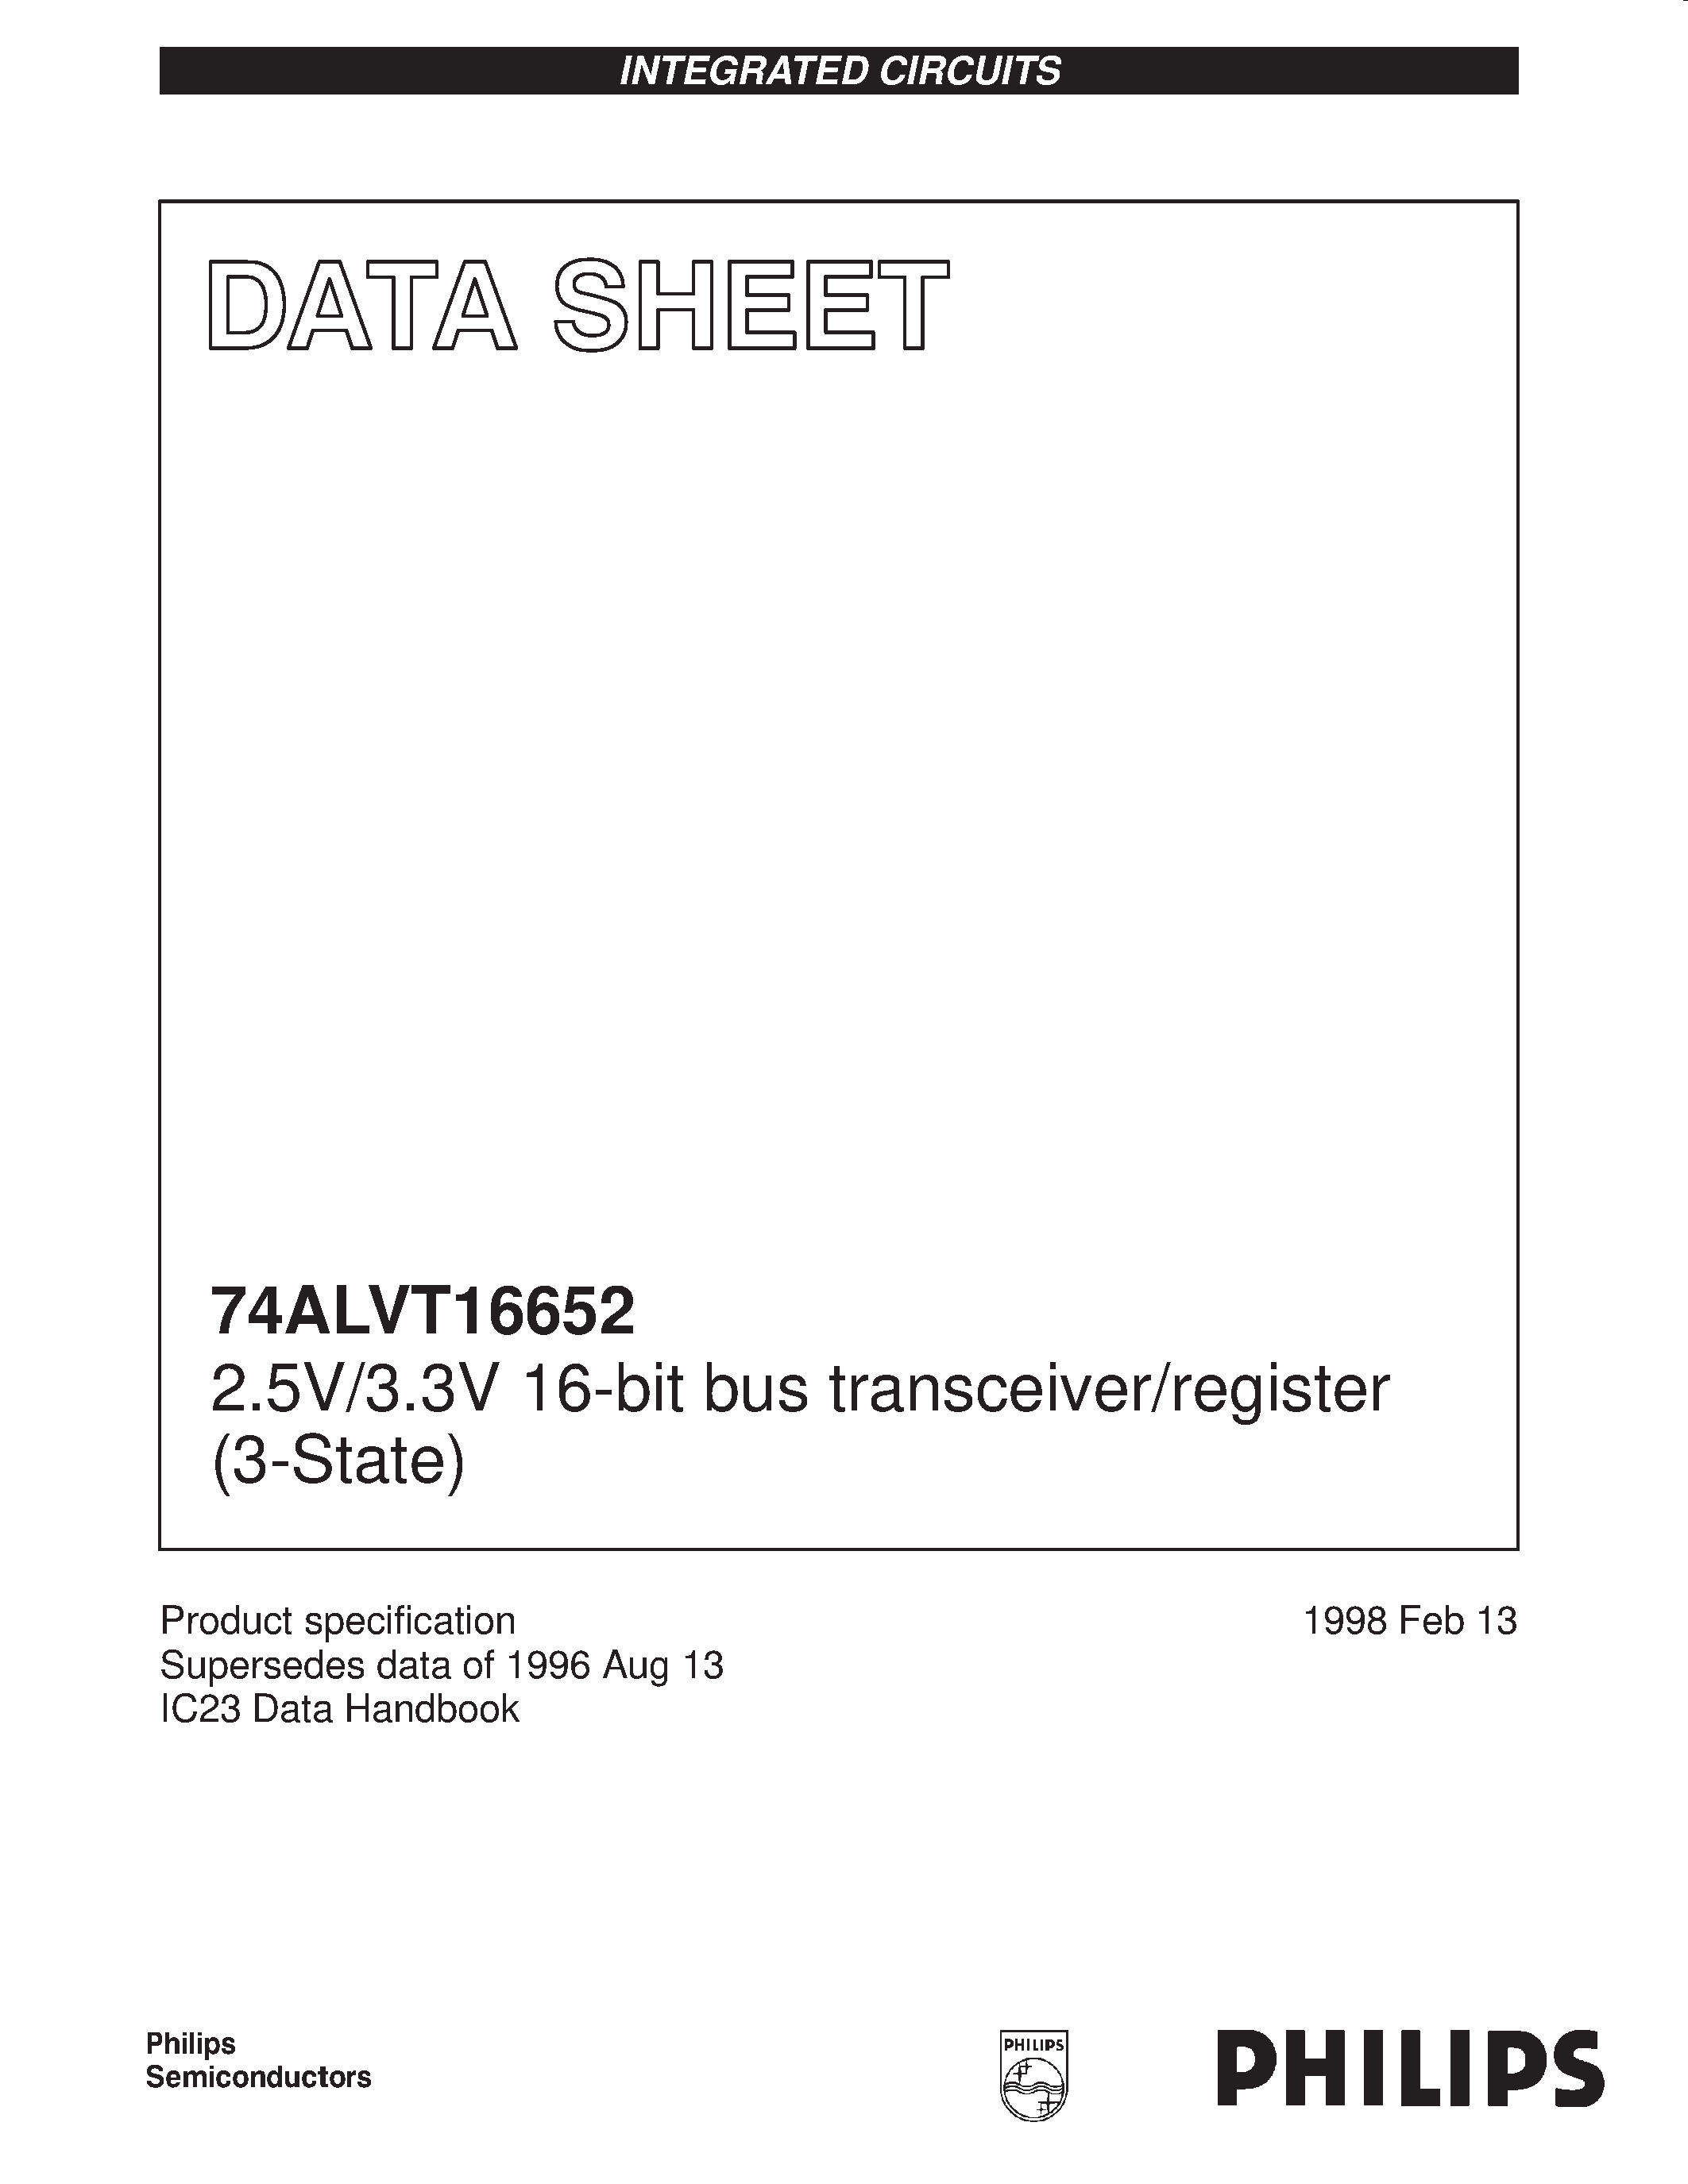 Datasheet 74ALVT16652DGG - 2.5V/3.3V 16-bit bus transceiver/register 3-State page 1